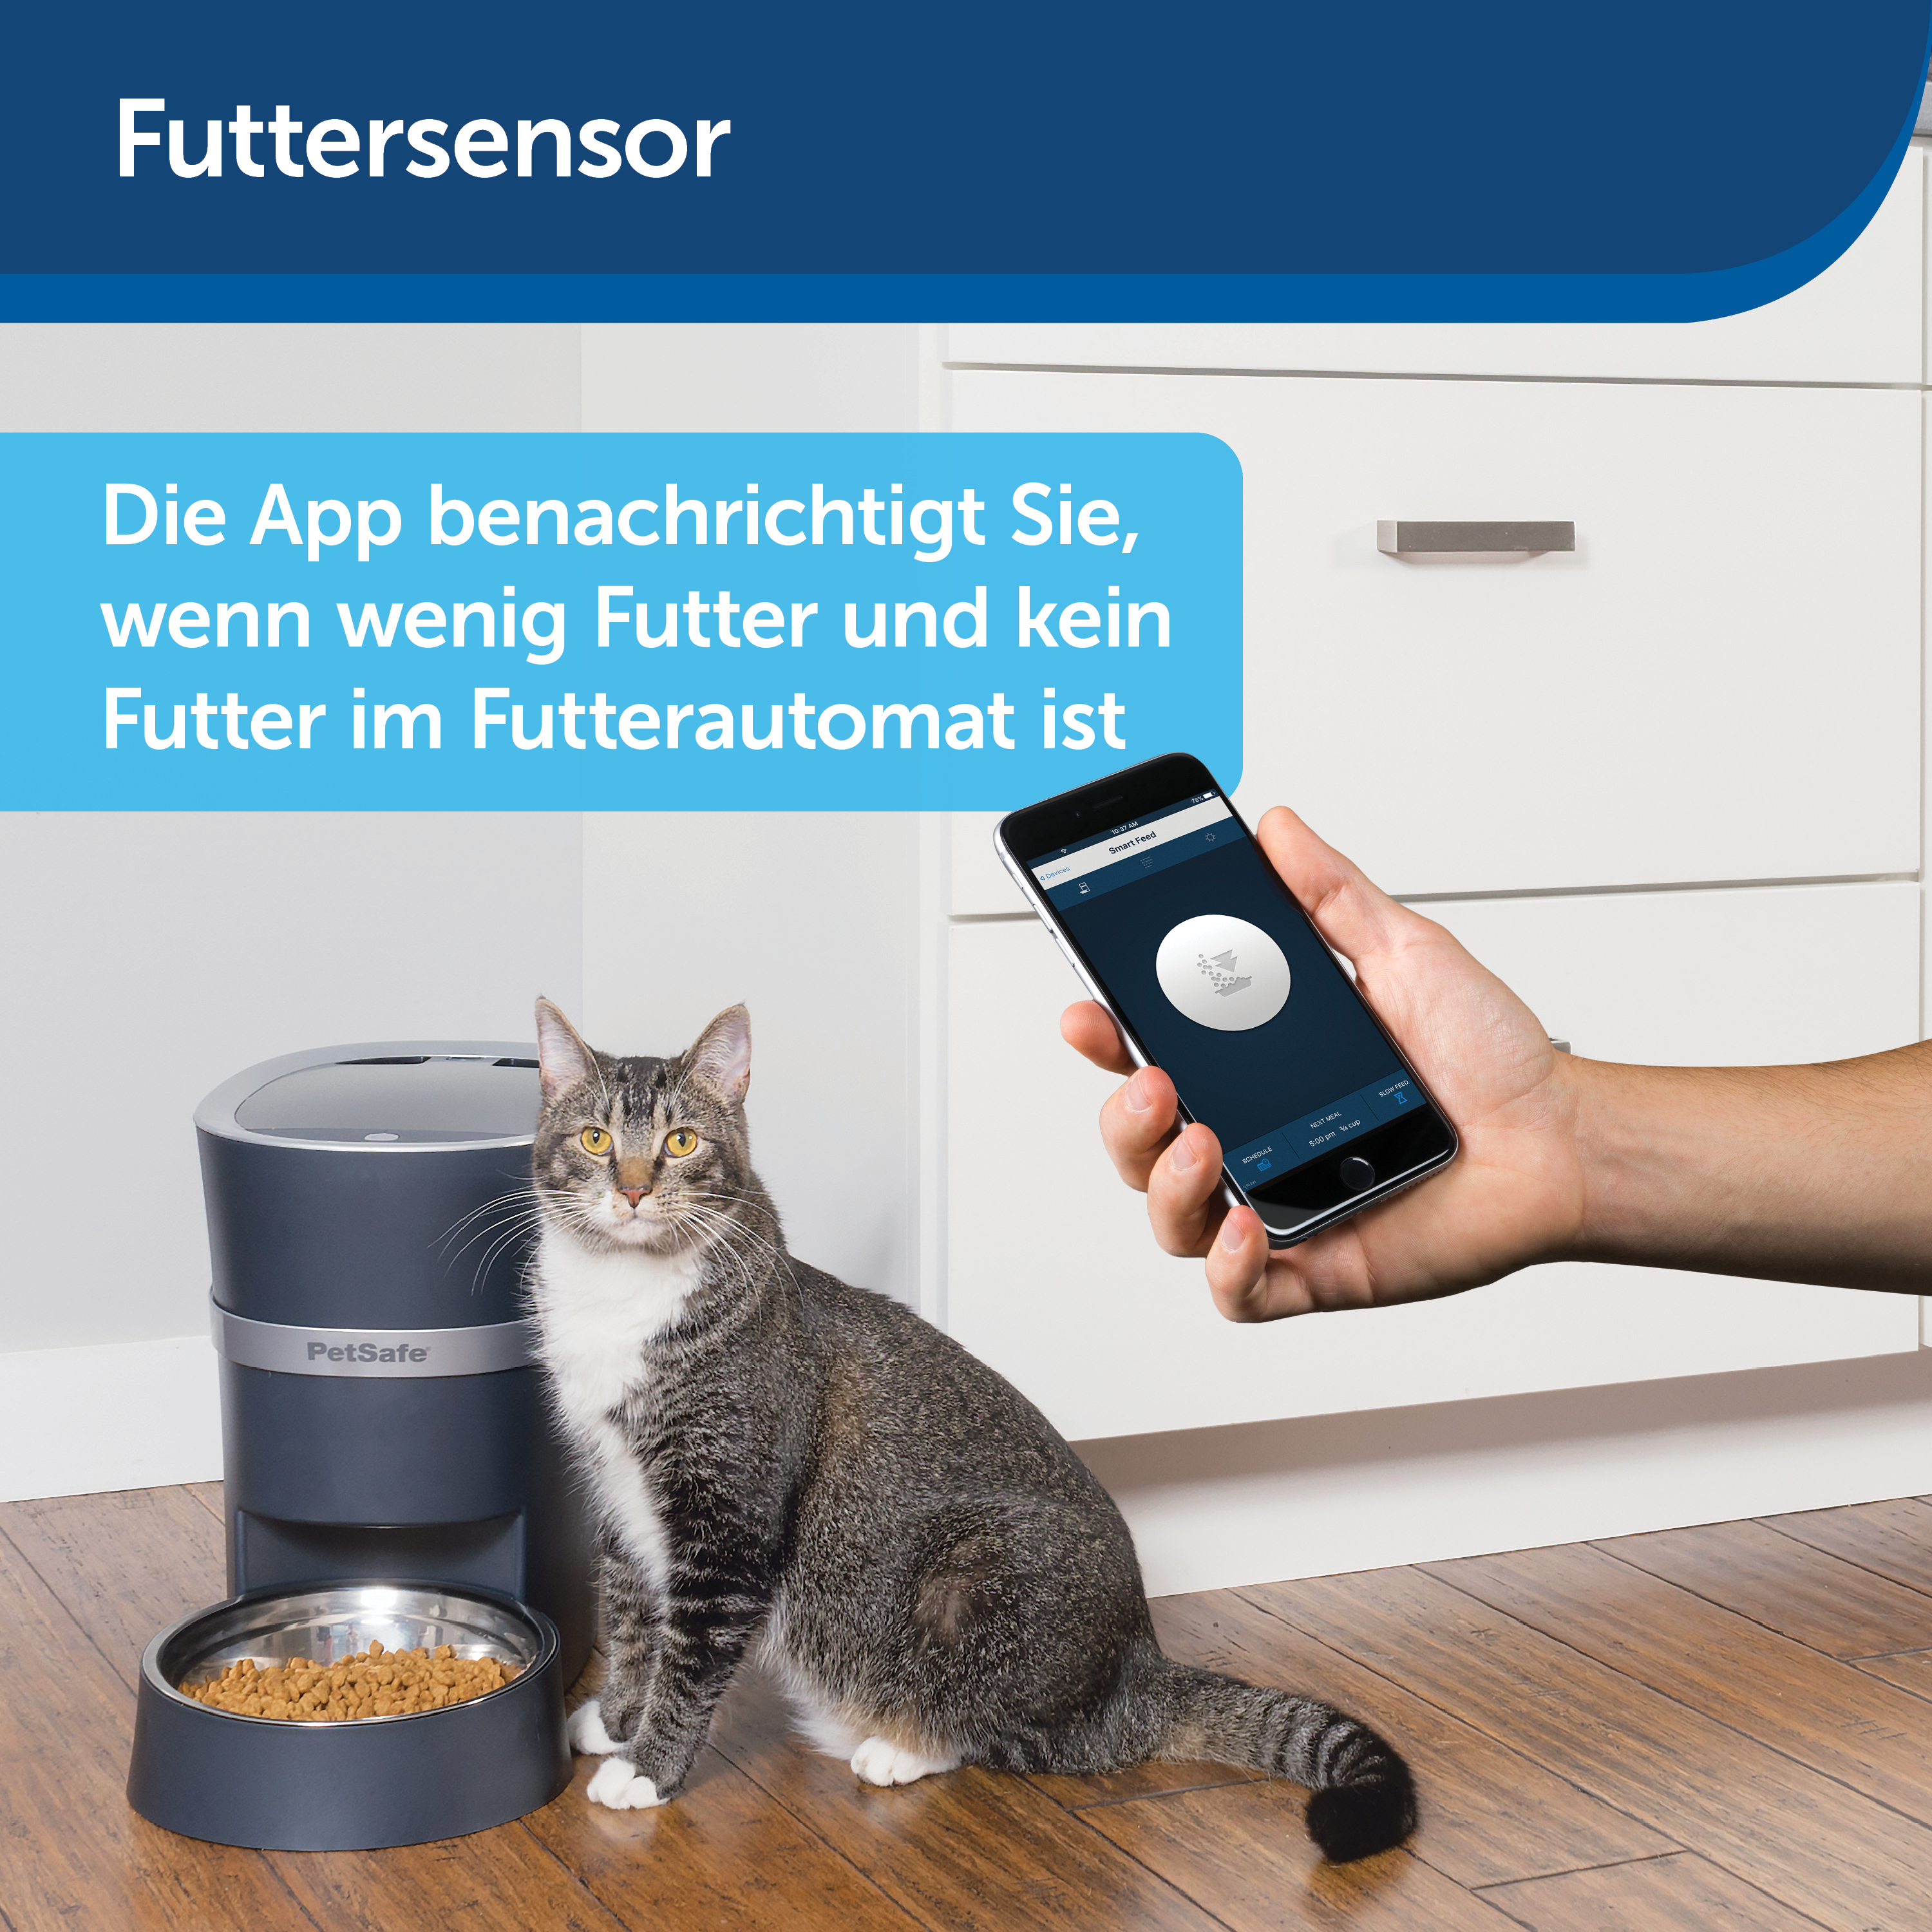 PETSAFE PetSafe® Futterautomat Feed Futterautomat Smart